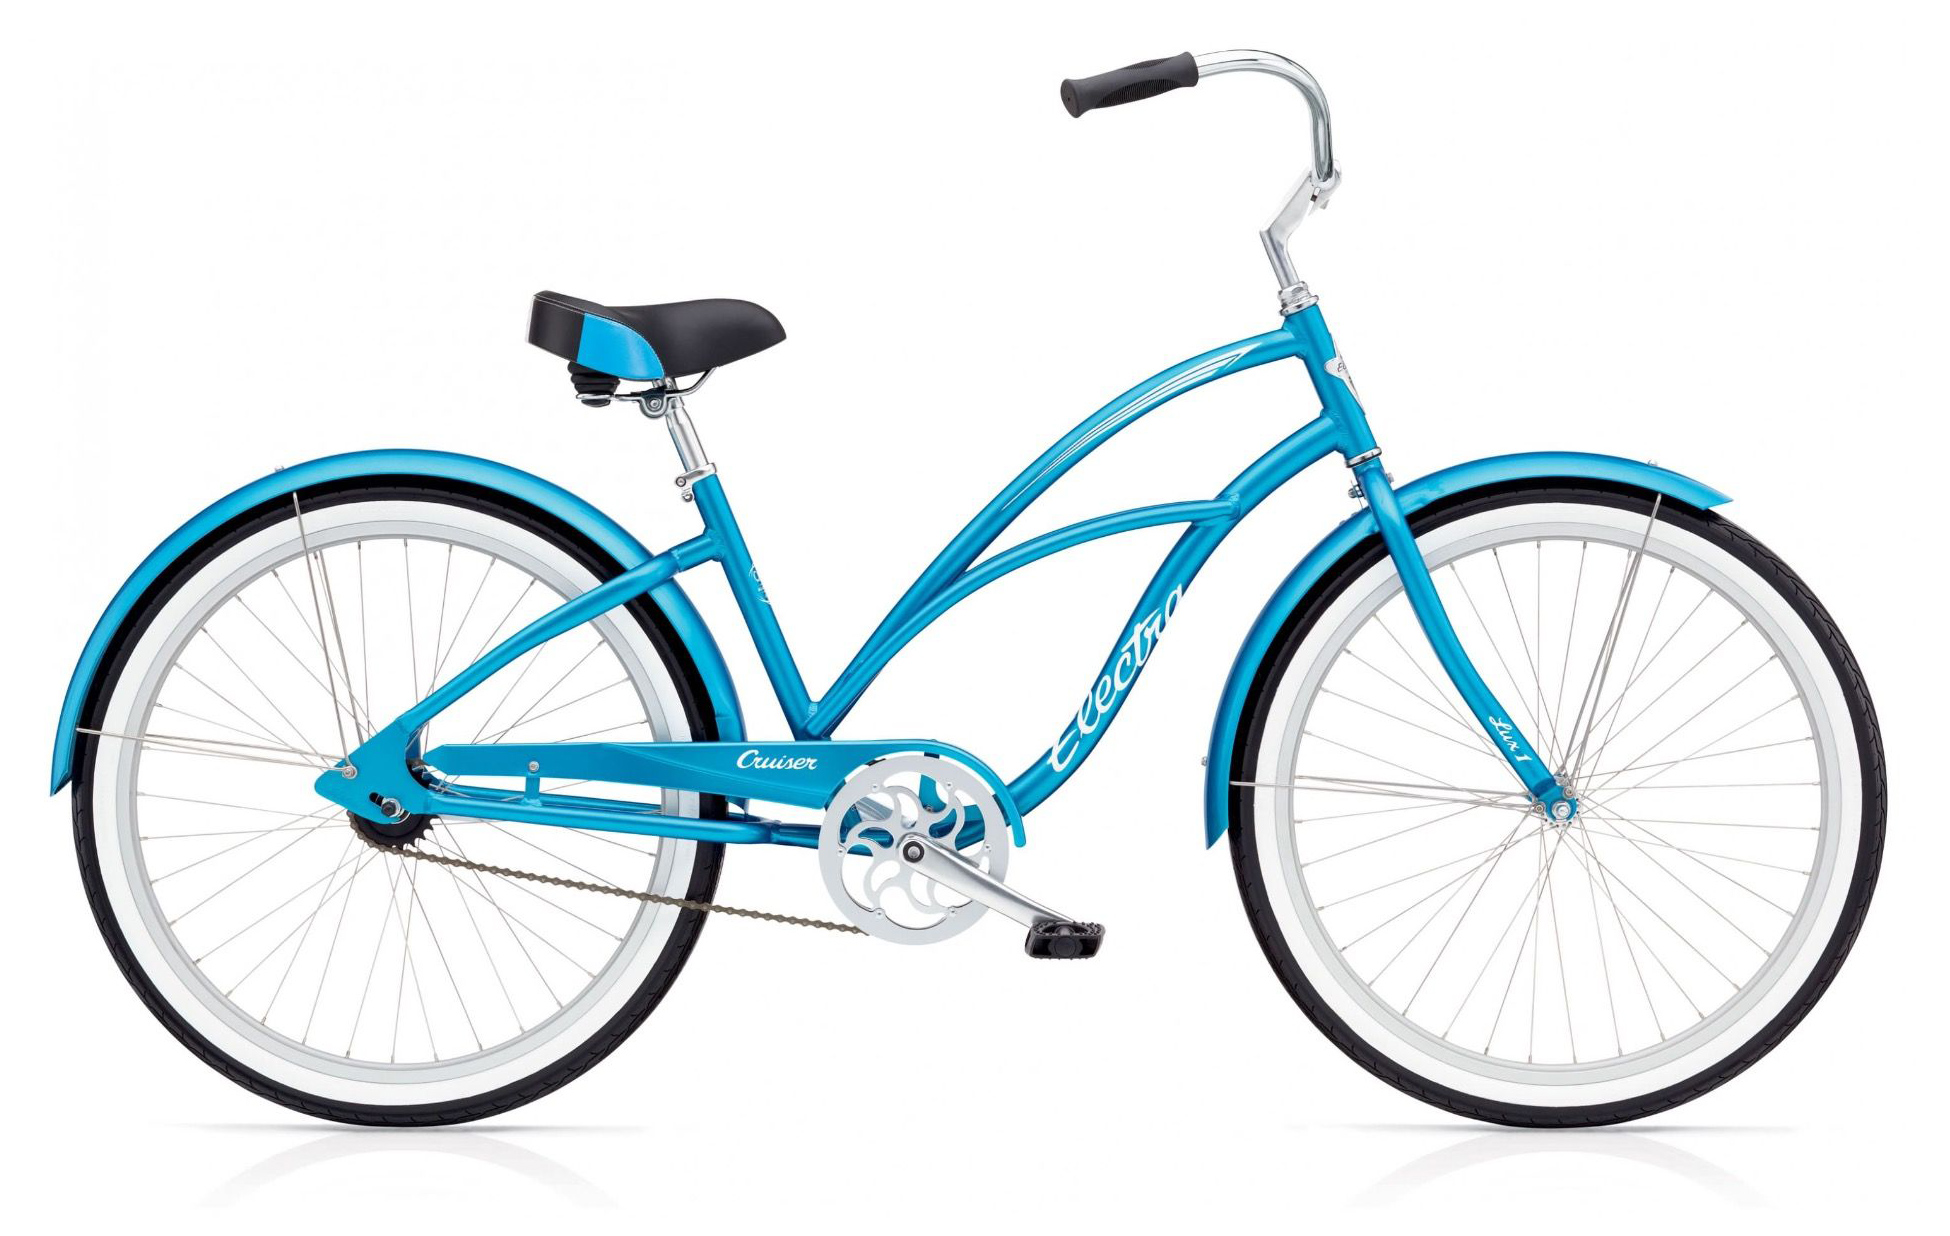  Отзывы о Женском велосипеде Electra Cruiser Lux 1 2019